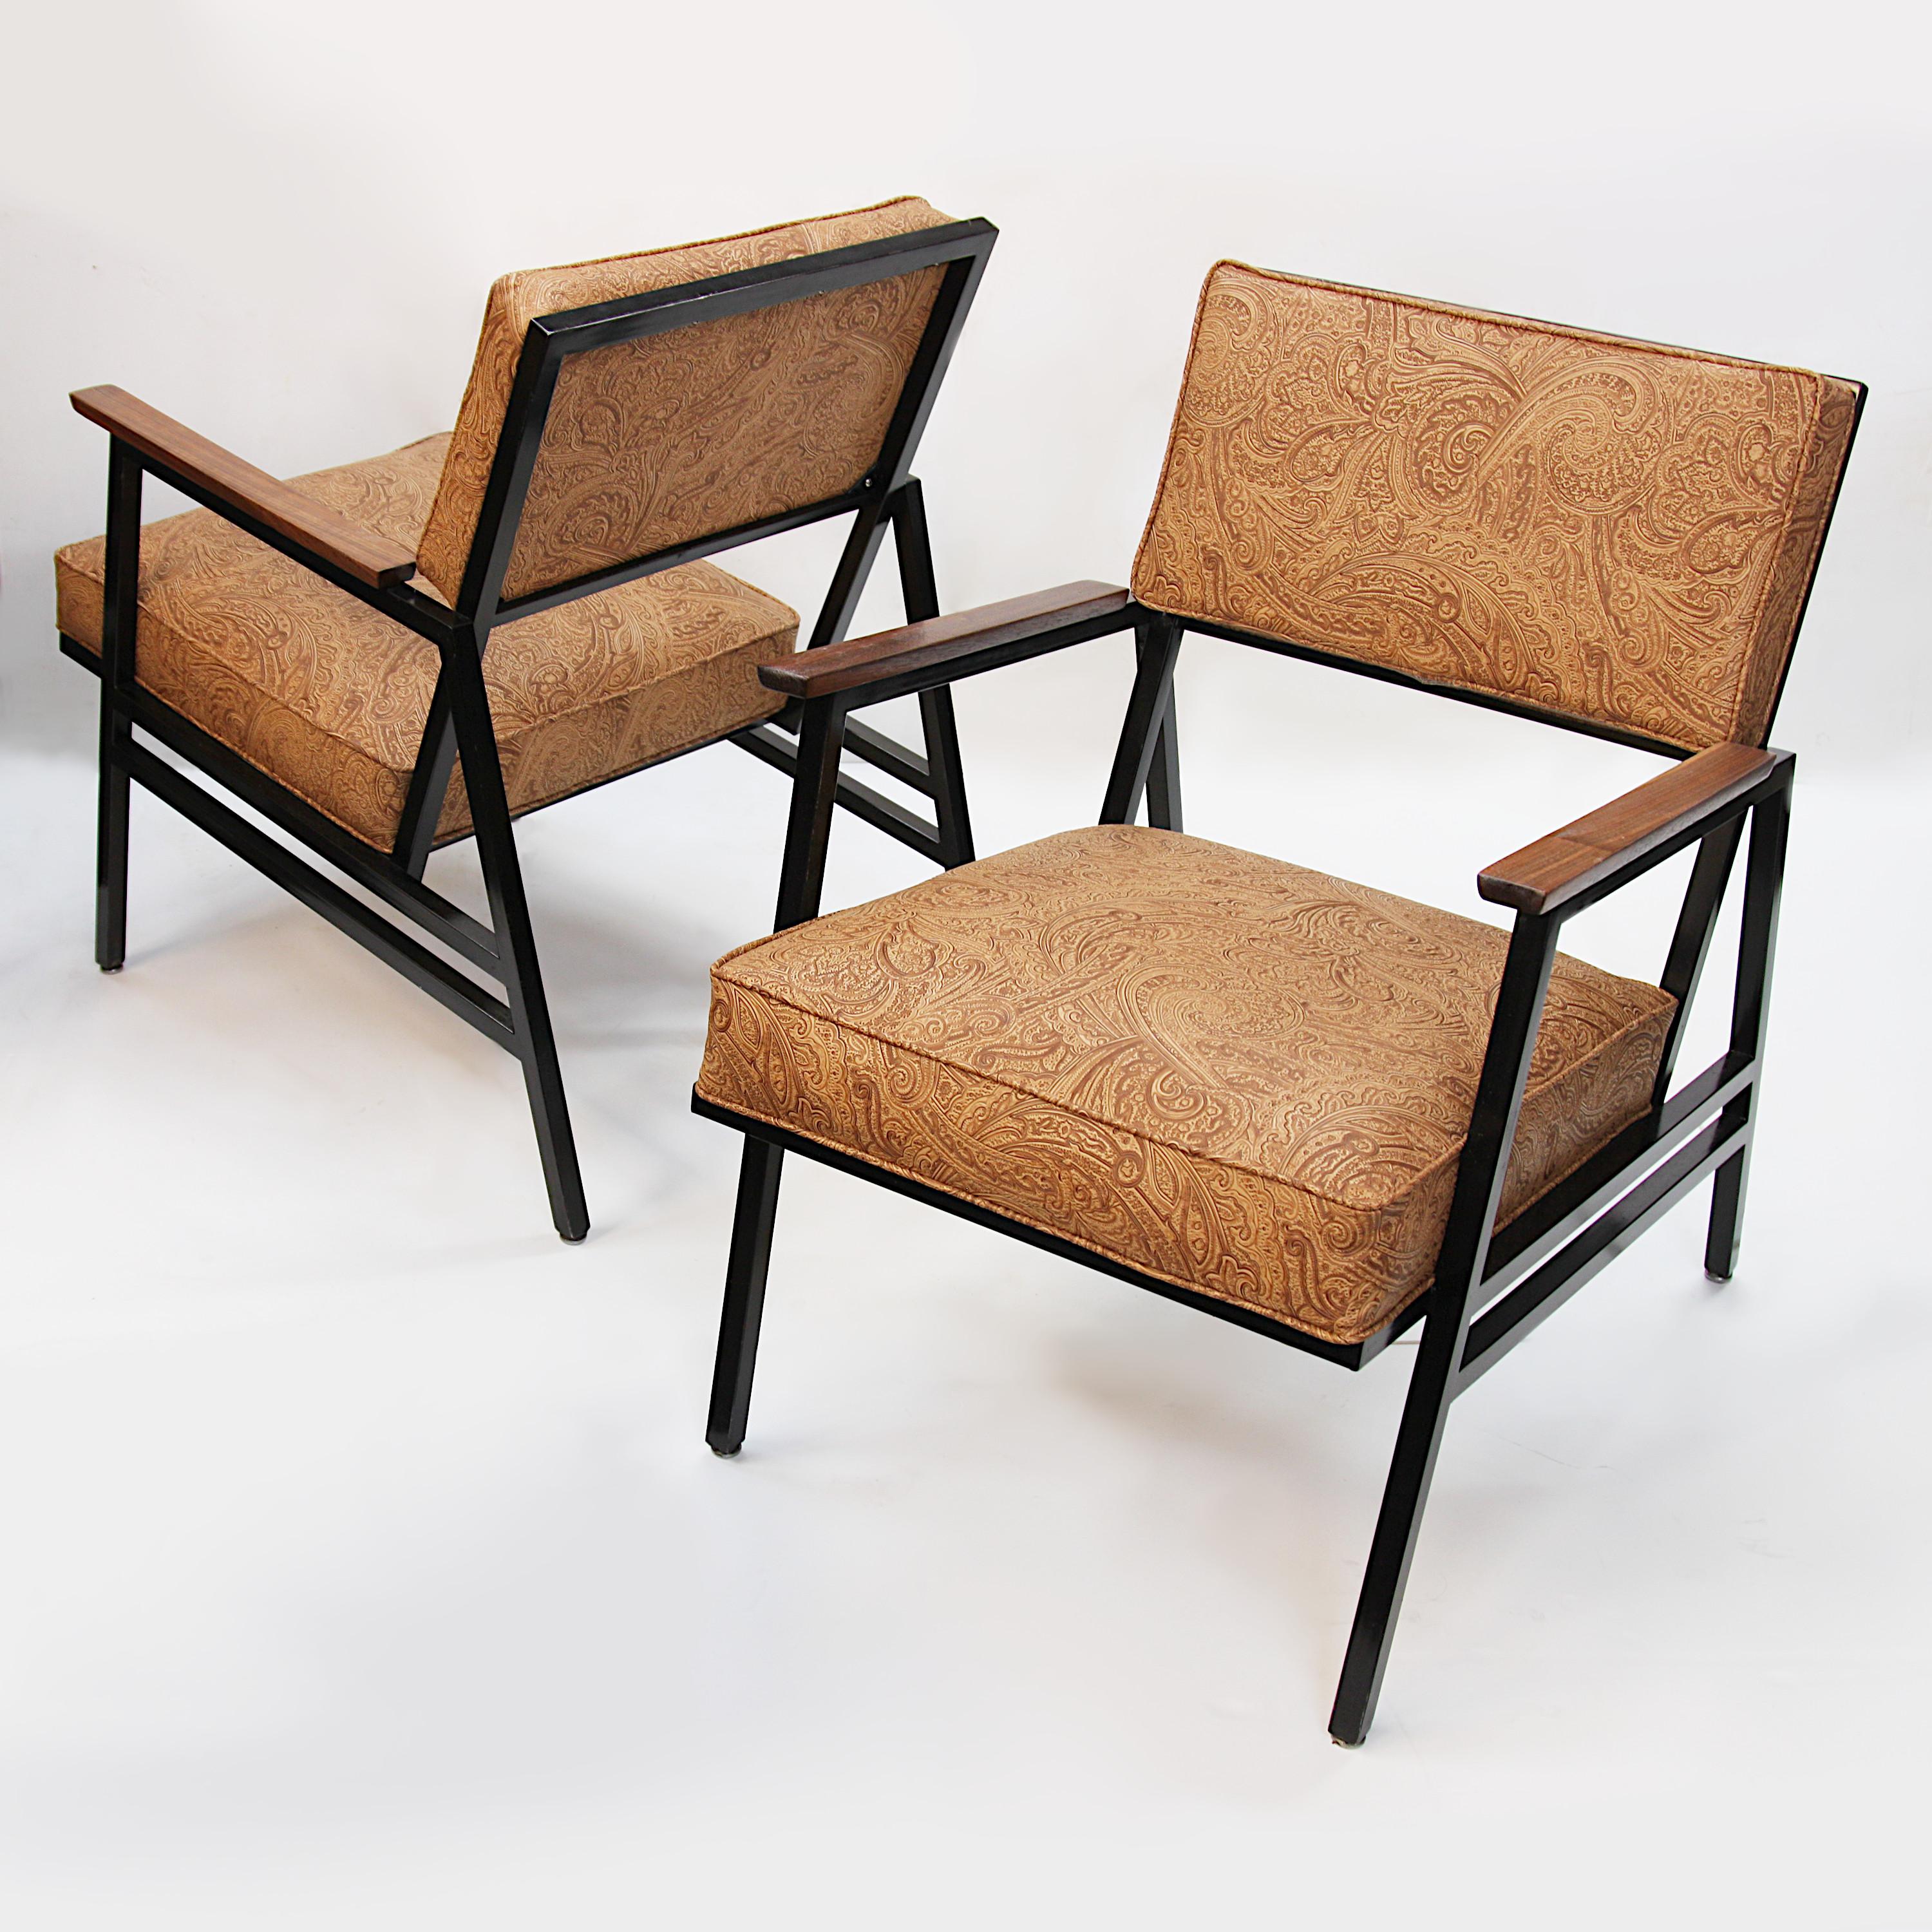 Charmante paire de fauteuils à armature en acier fabriqués en 1965 par Steelcase Inc. Les chaises sont dotées d'une structure angulaire en acier peint en noir, d'accoudoirs en noyer et d'un nouveau vinyle marron gaufré d'un motif cachemire classique